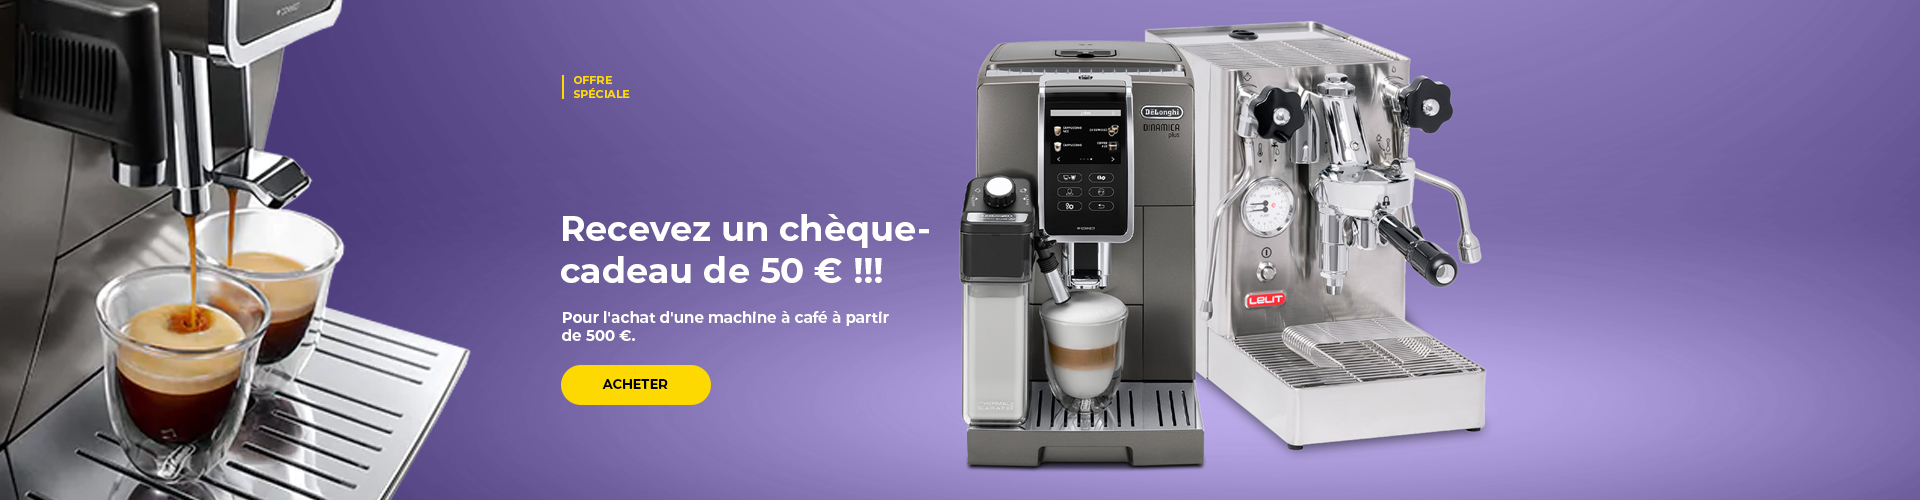 "Recevez un chèque-cadeau de 50 € !!! pour l'achat d'une machine à café à partir de 500 €."